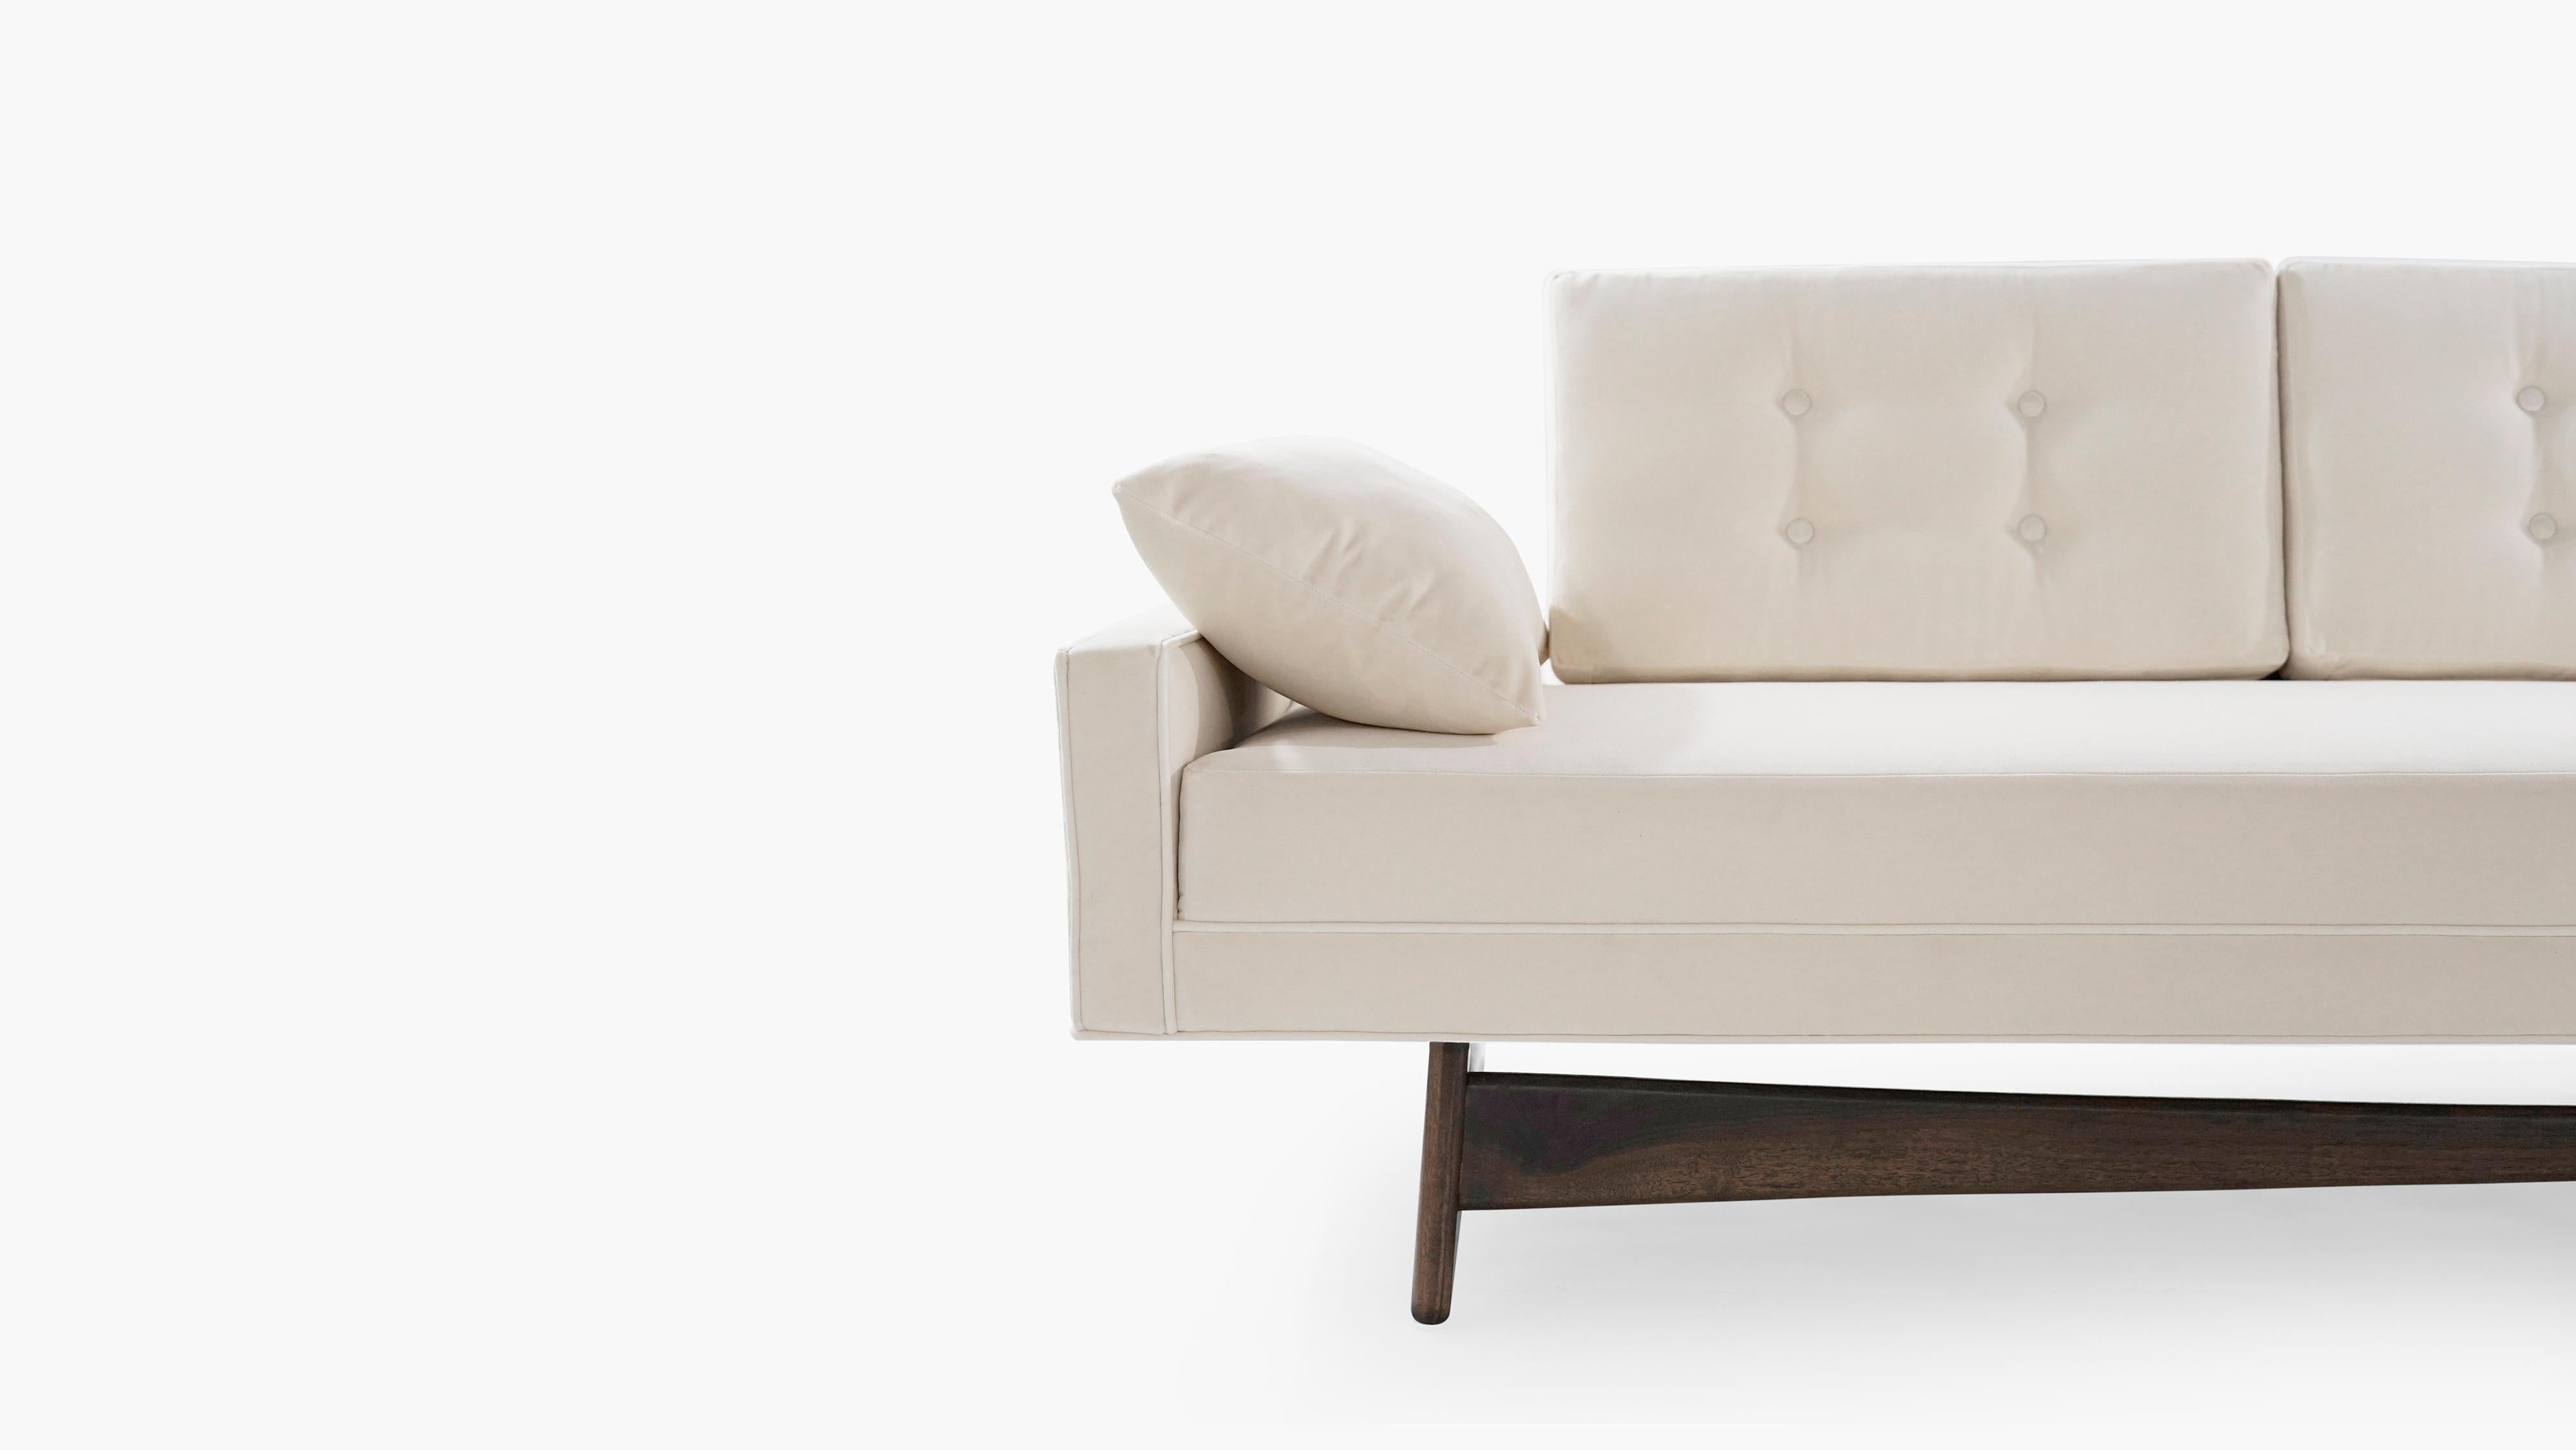 Velvet Adrian Pearsall for Craft Associates Gondola Sofa, Model 2408